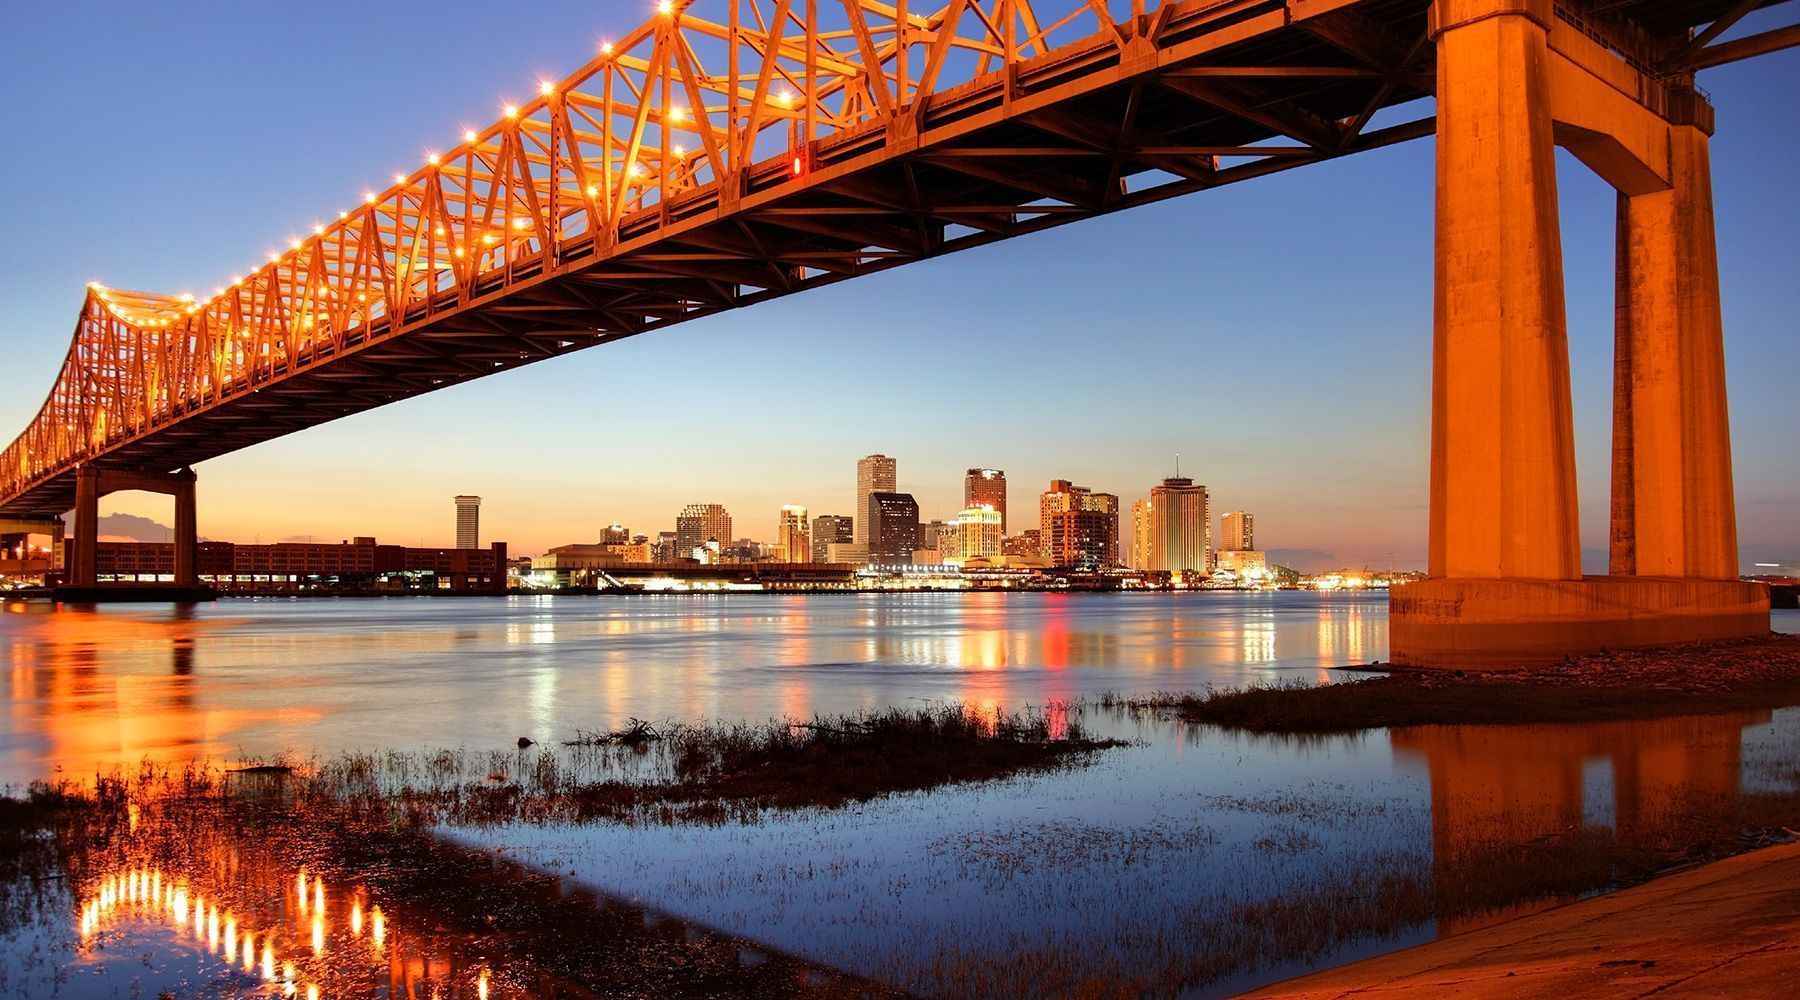 Là “Thành phố nghệ thuật của Louisiana”, Lafayette mang vẻ đẹp đặc trưng về văn hóa và lịch sử